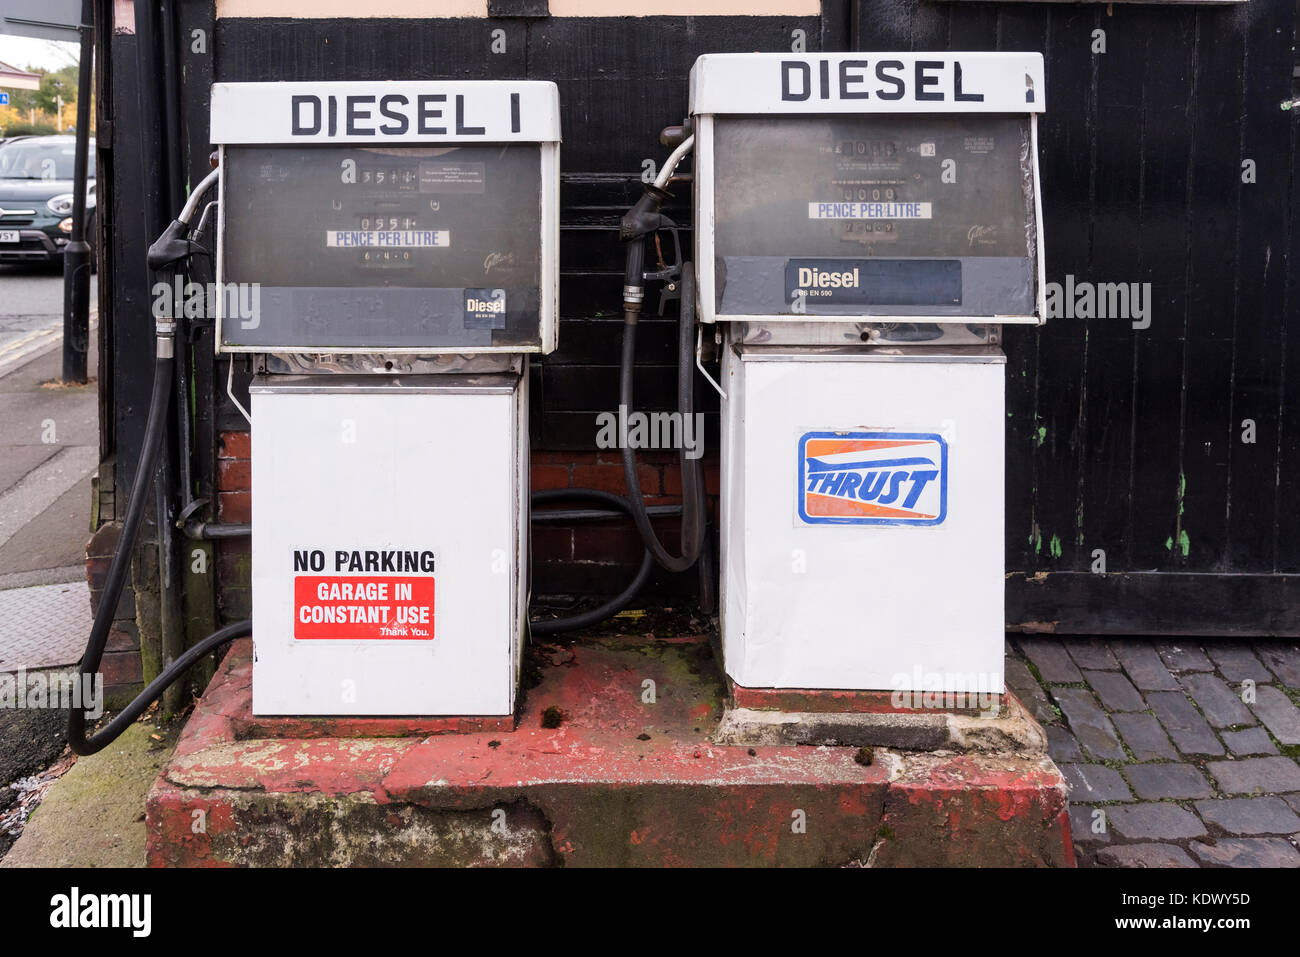 Dos bombas diesel moda antigua en un garaje forecourt. Foto de stock